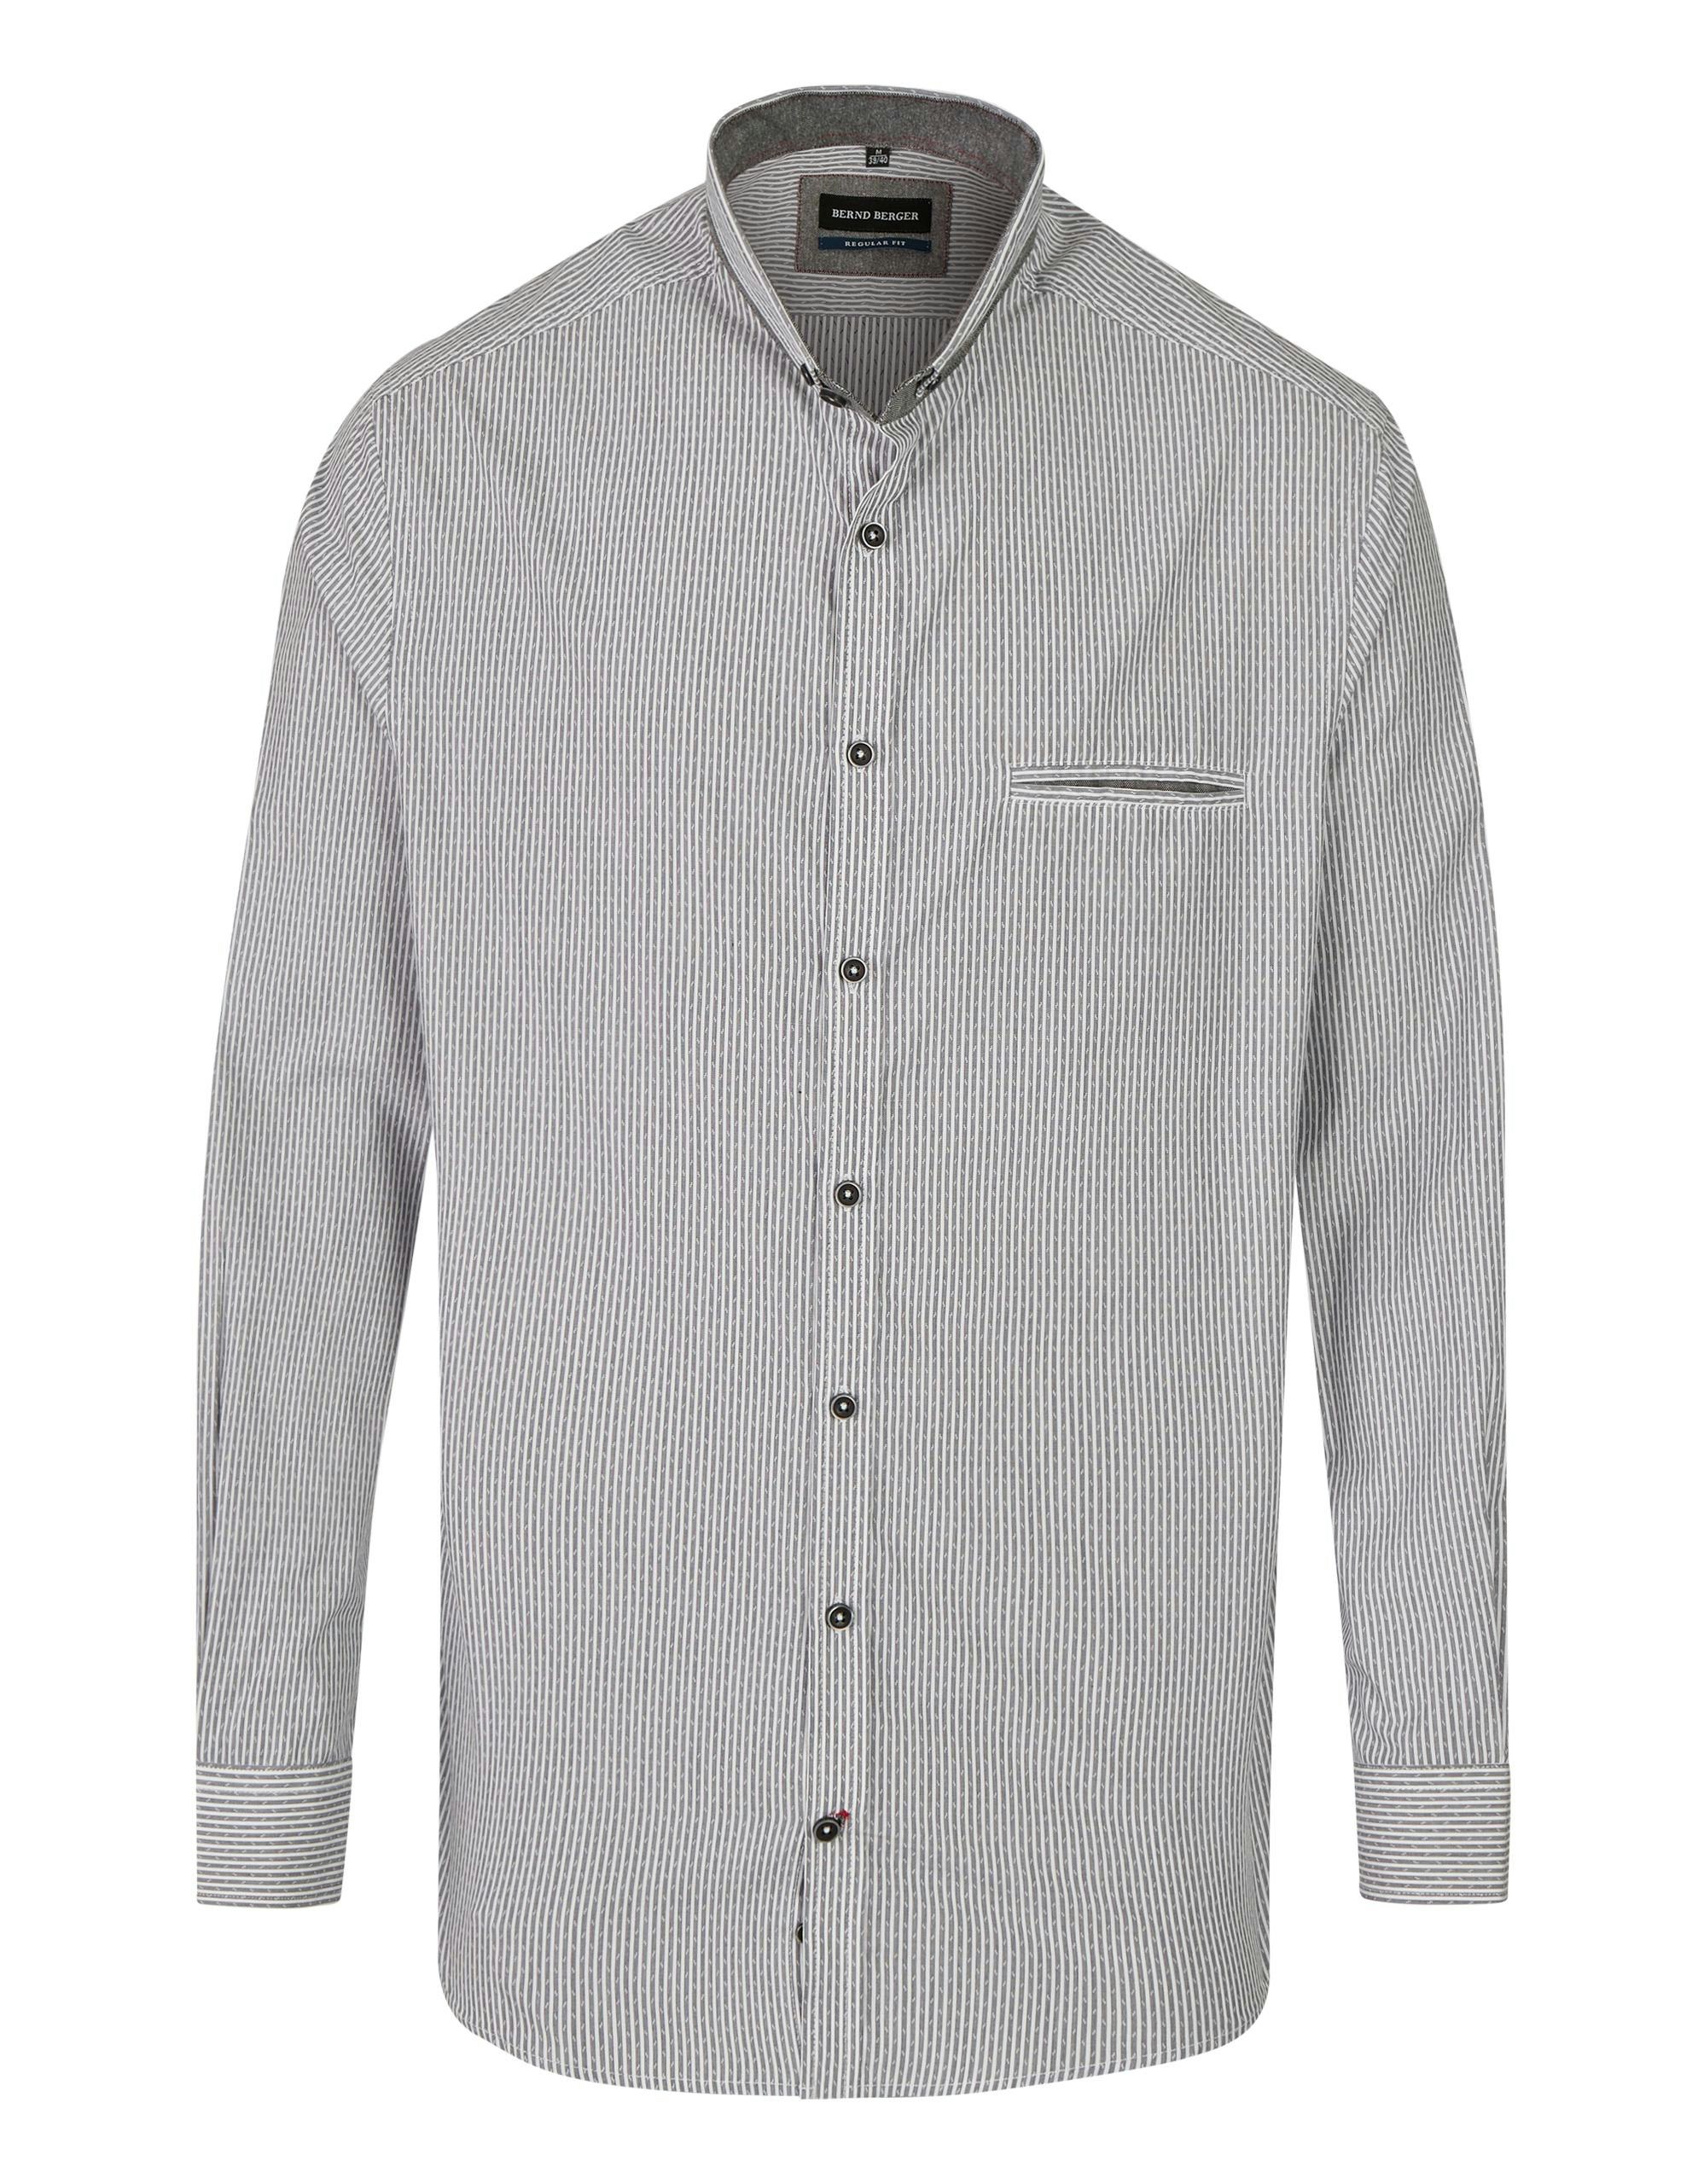 Mode Hemden Flanellhemden Flanellhemd wei\u00df mit grauen Linien 